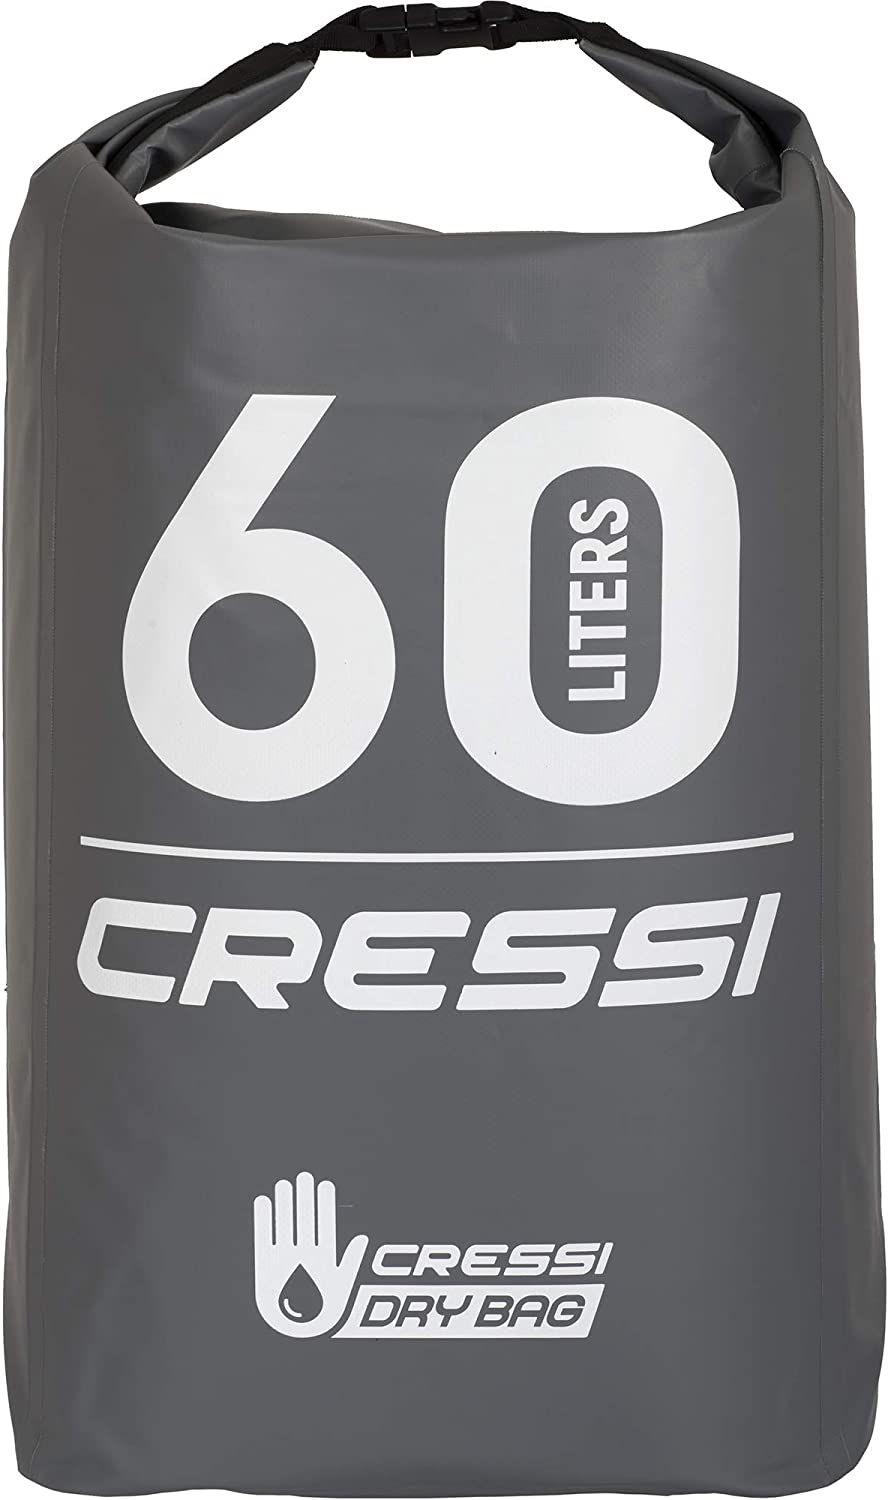 Герморюкзак CRESSI Professional BACK PACK, серый, 60 литров, Cressi XUB965160